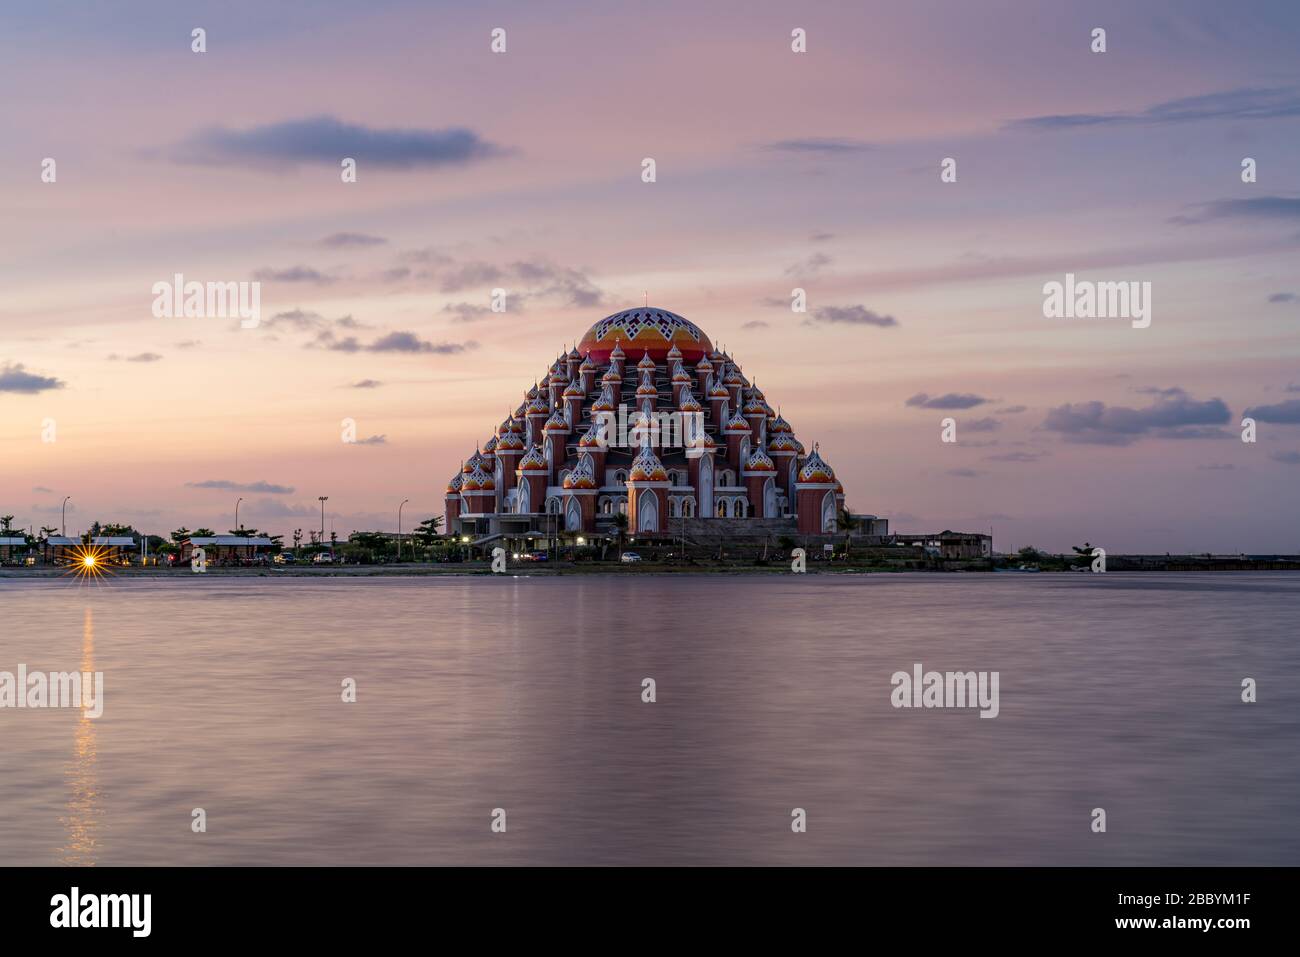 La mezquita de 99 cúpulas en Makassar, Sulawesi, Indonesia, al atardecer con el cielo rosa Foto de stock